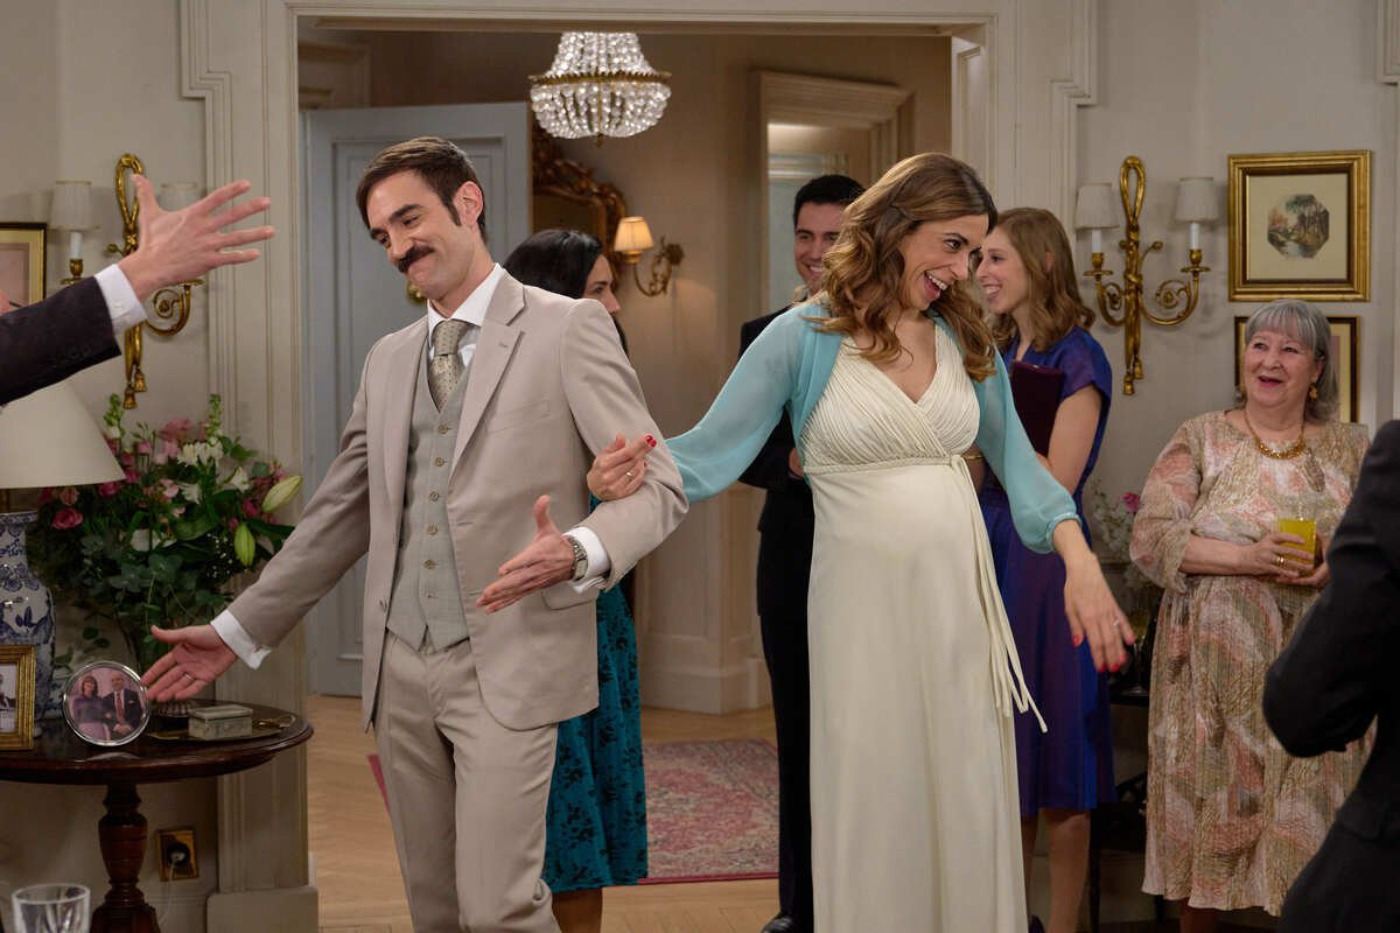 Tras darse el sí, quiero, Raúl y Coral llegan radiantes de felicidad a la fiesta para celebrar su matrimonio